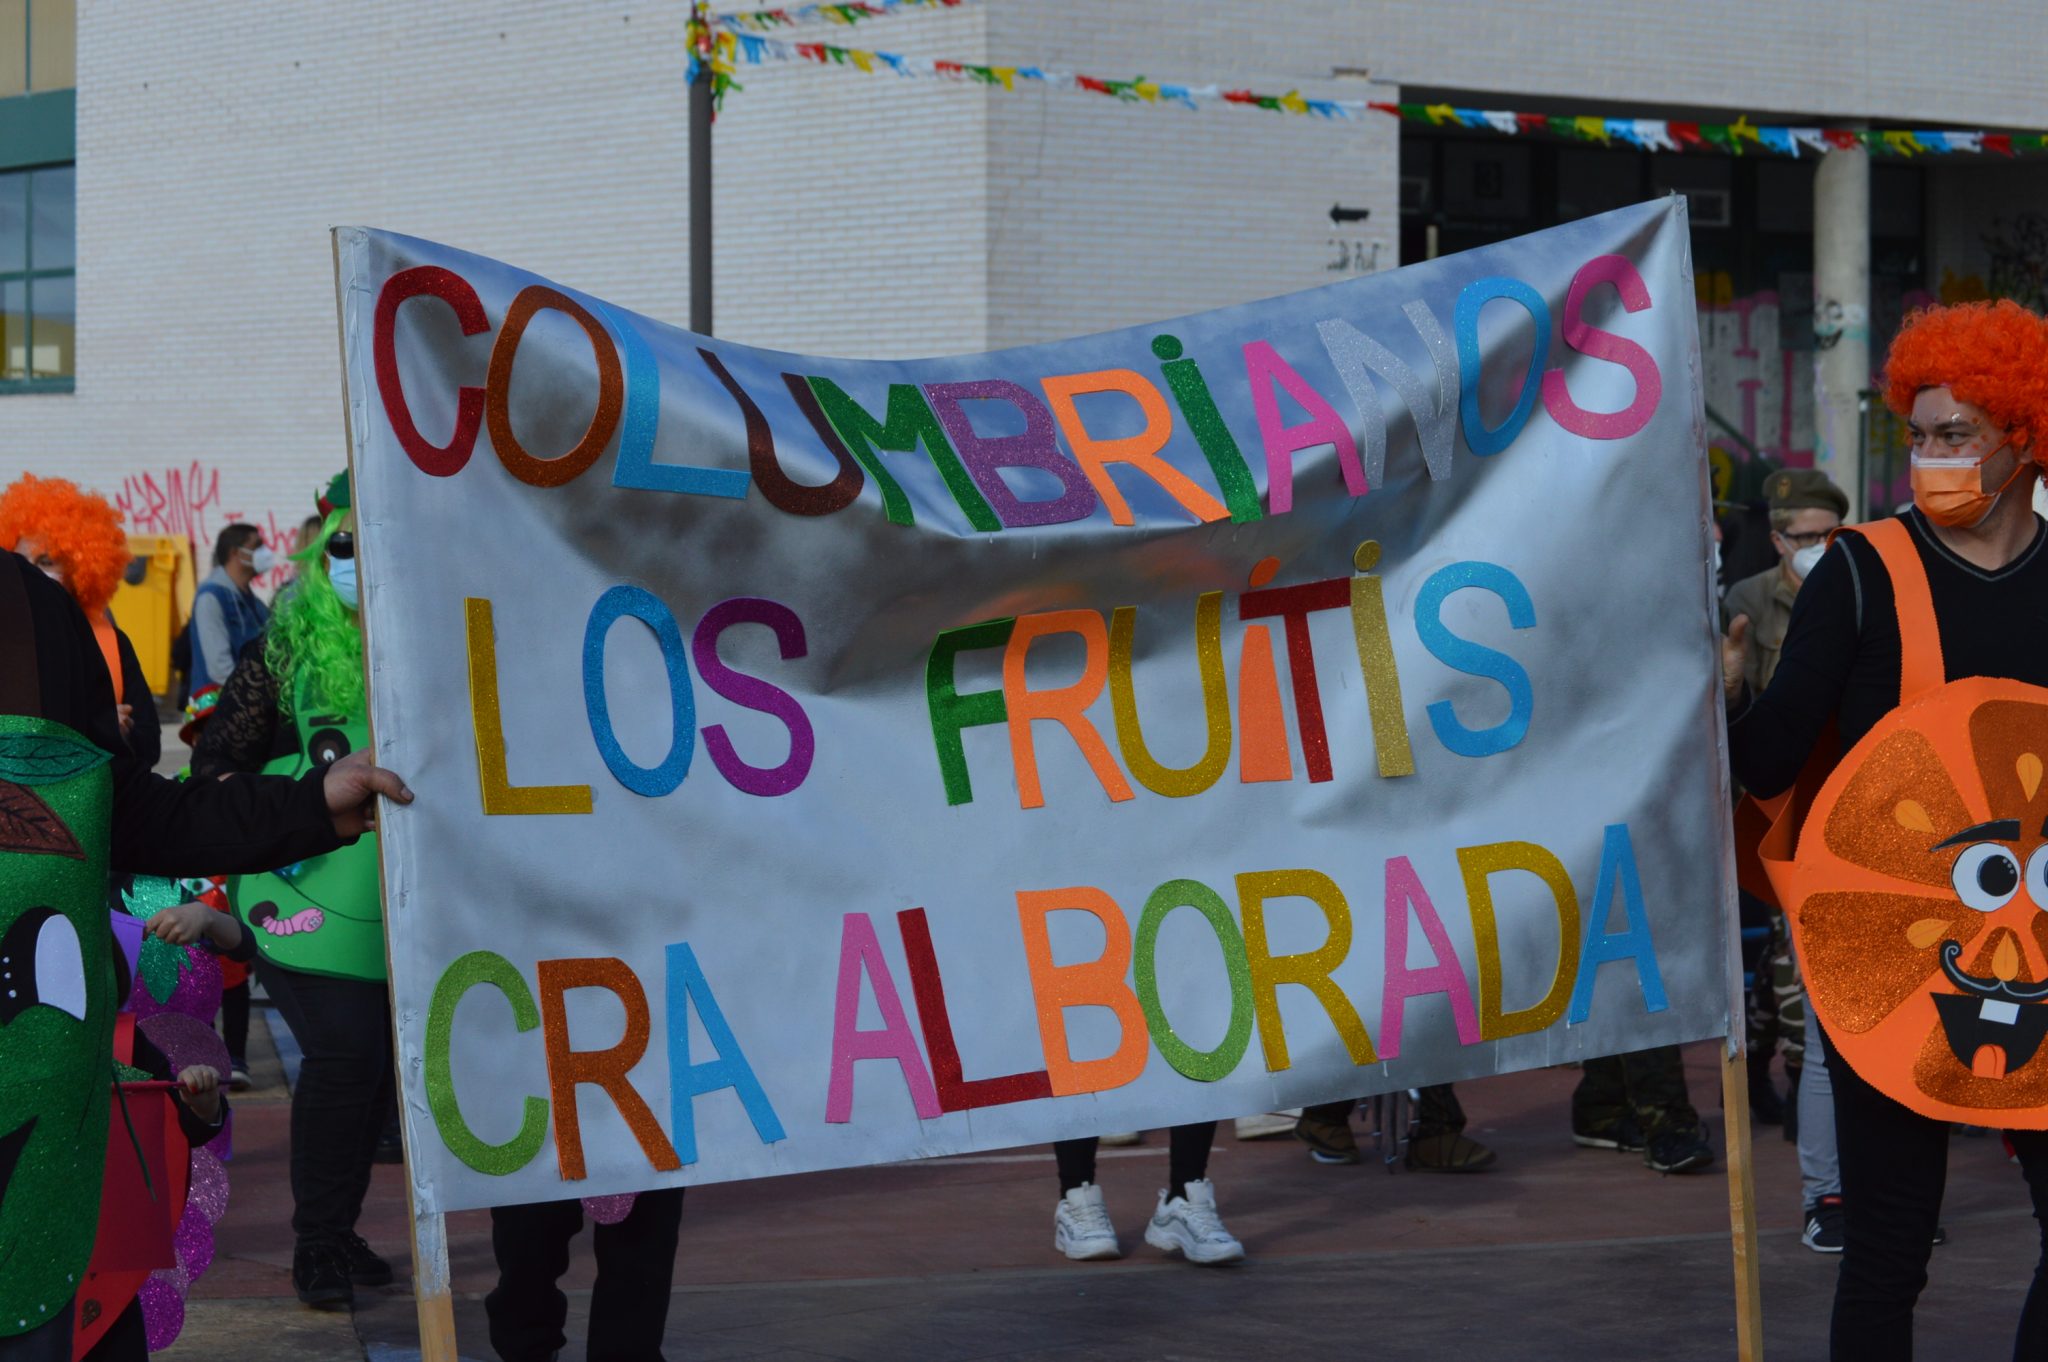 Carnaval Infantil de Ponferrada, los más peques inundan la calle de color y buen humor 64